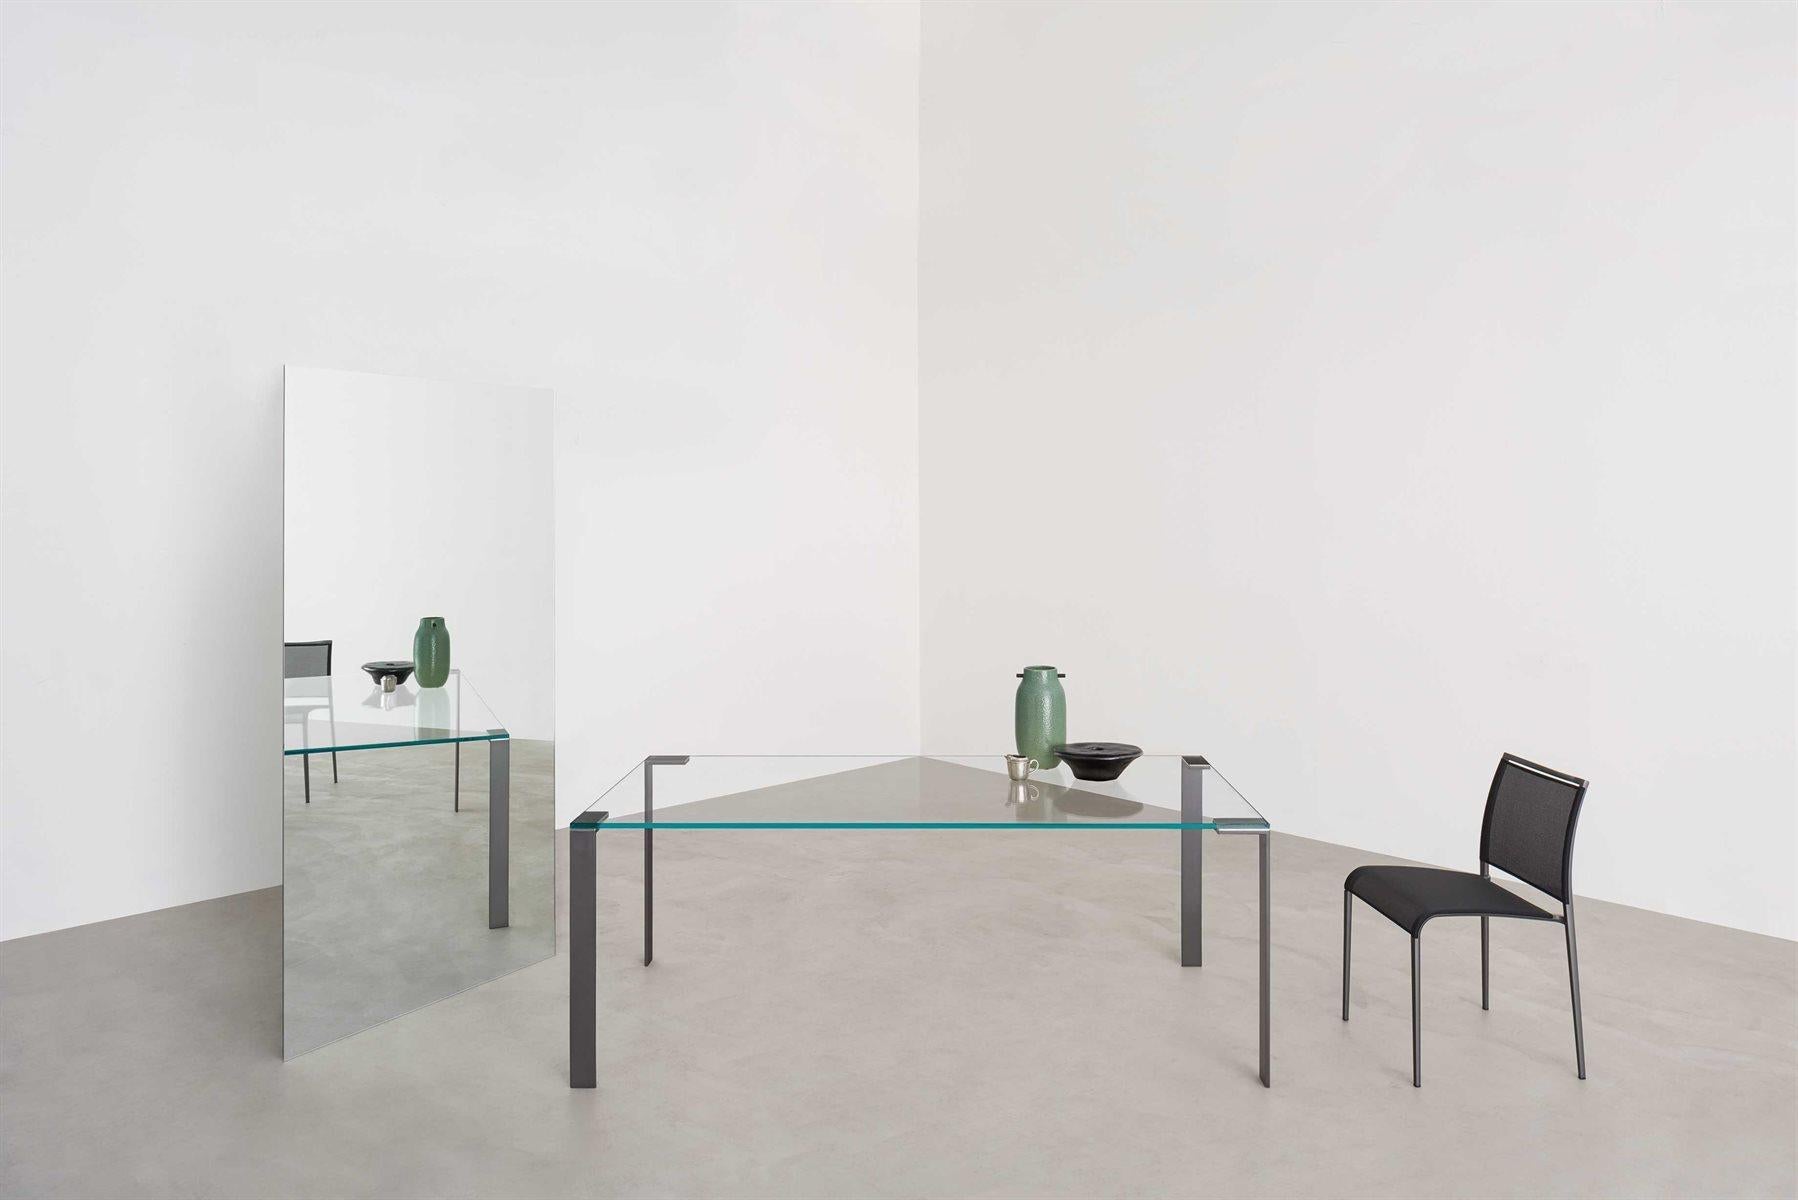 Verre Liko conçu par Arik Levy
Des tables qui sont l'essence même de la transparence et de la substance, de la légèreté et de la solidité. Un résultat esthétique surprenant généré par un design extrême centré sur une combinaison de matériaux et de